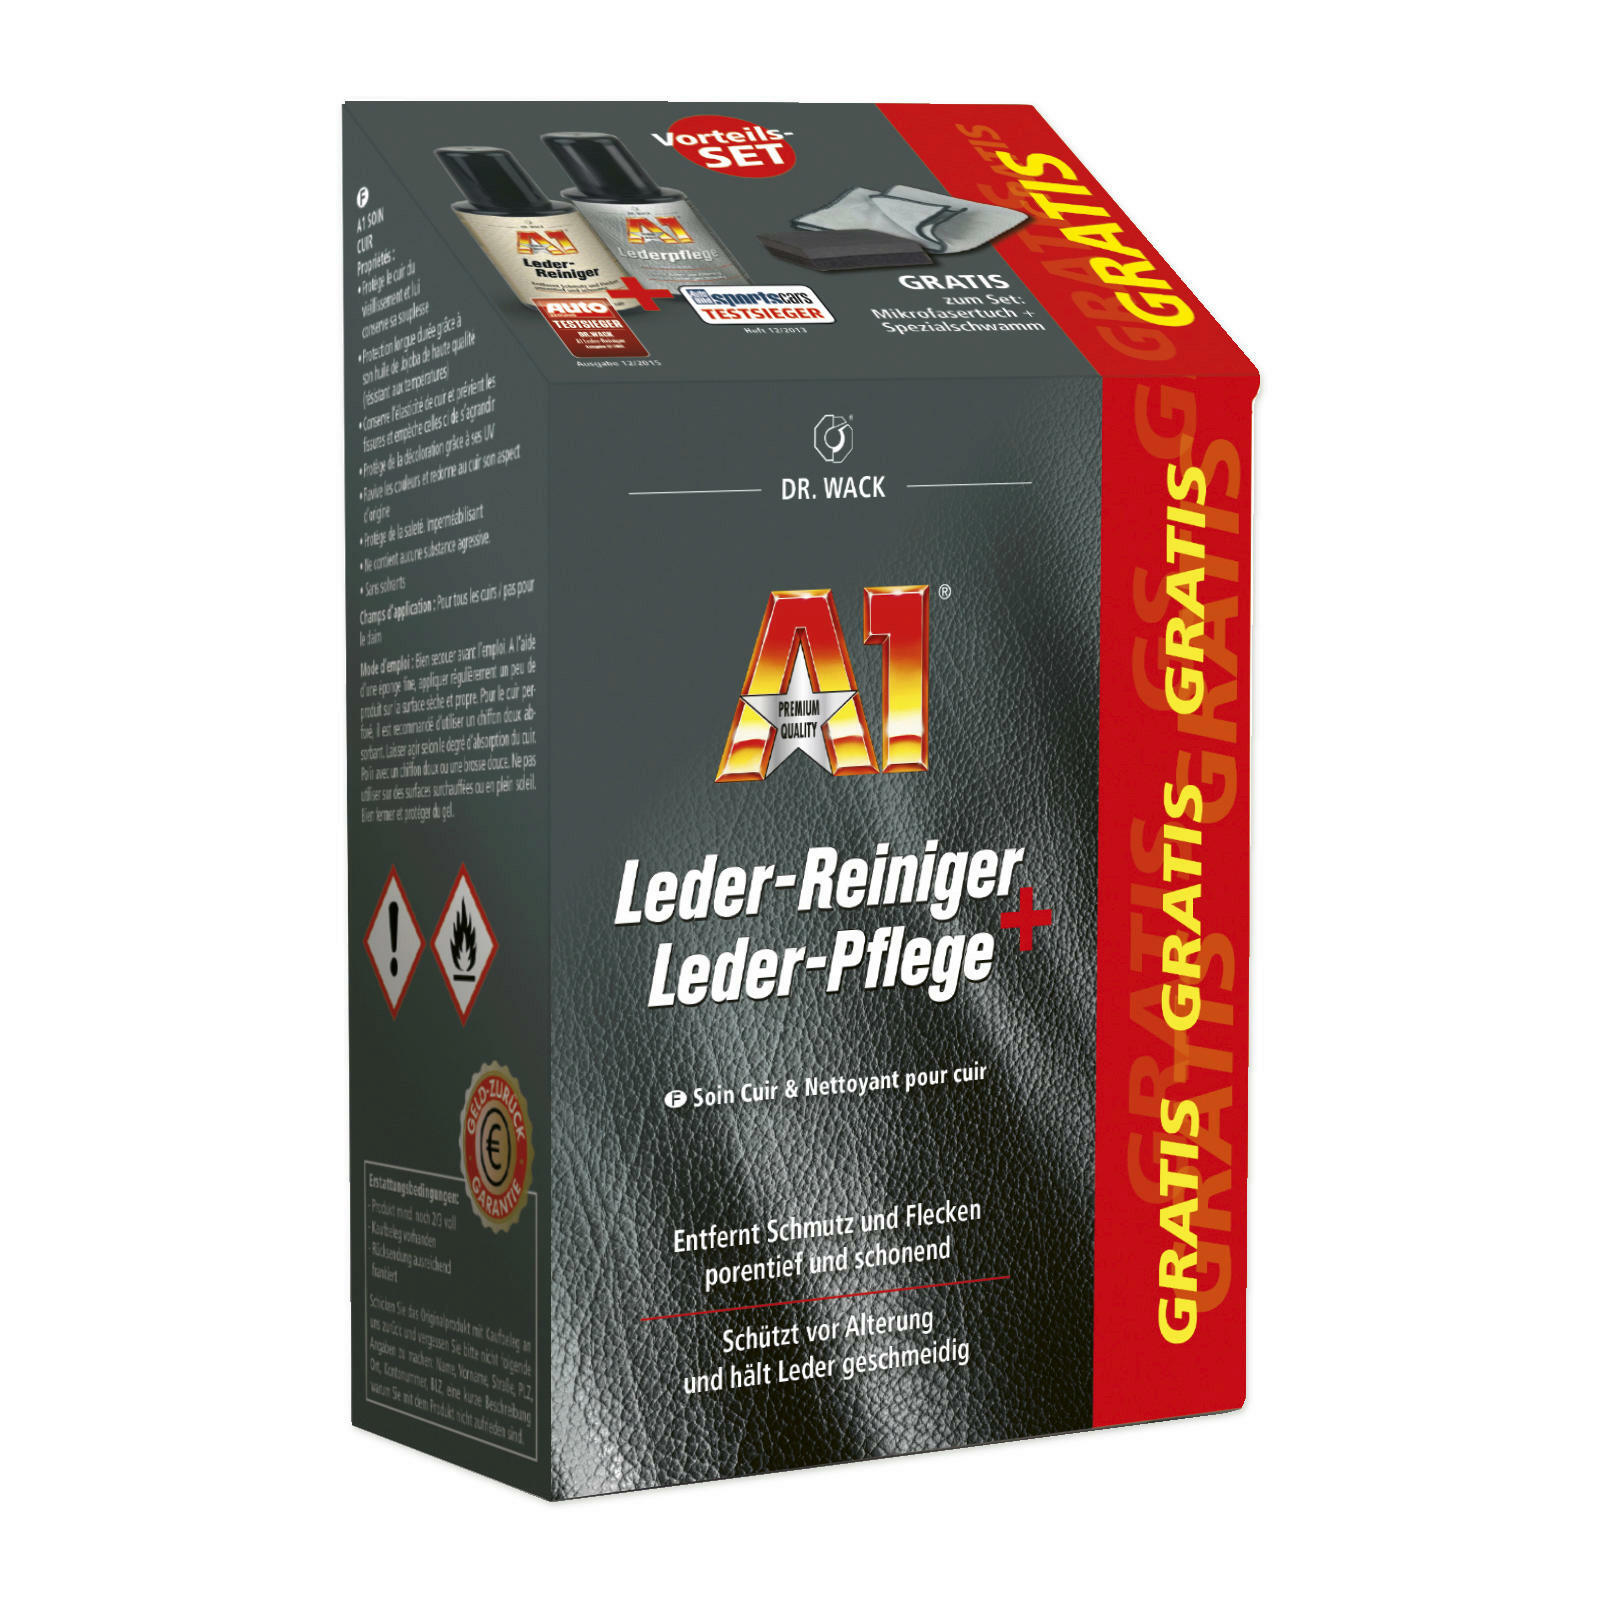 A1 Leder-Reiniger + A1 Leder-Pflege